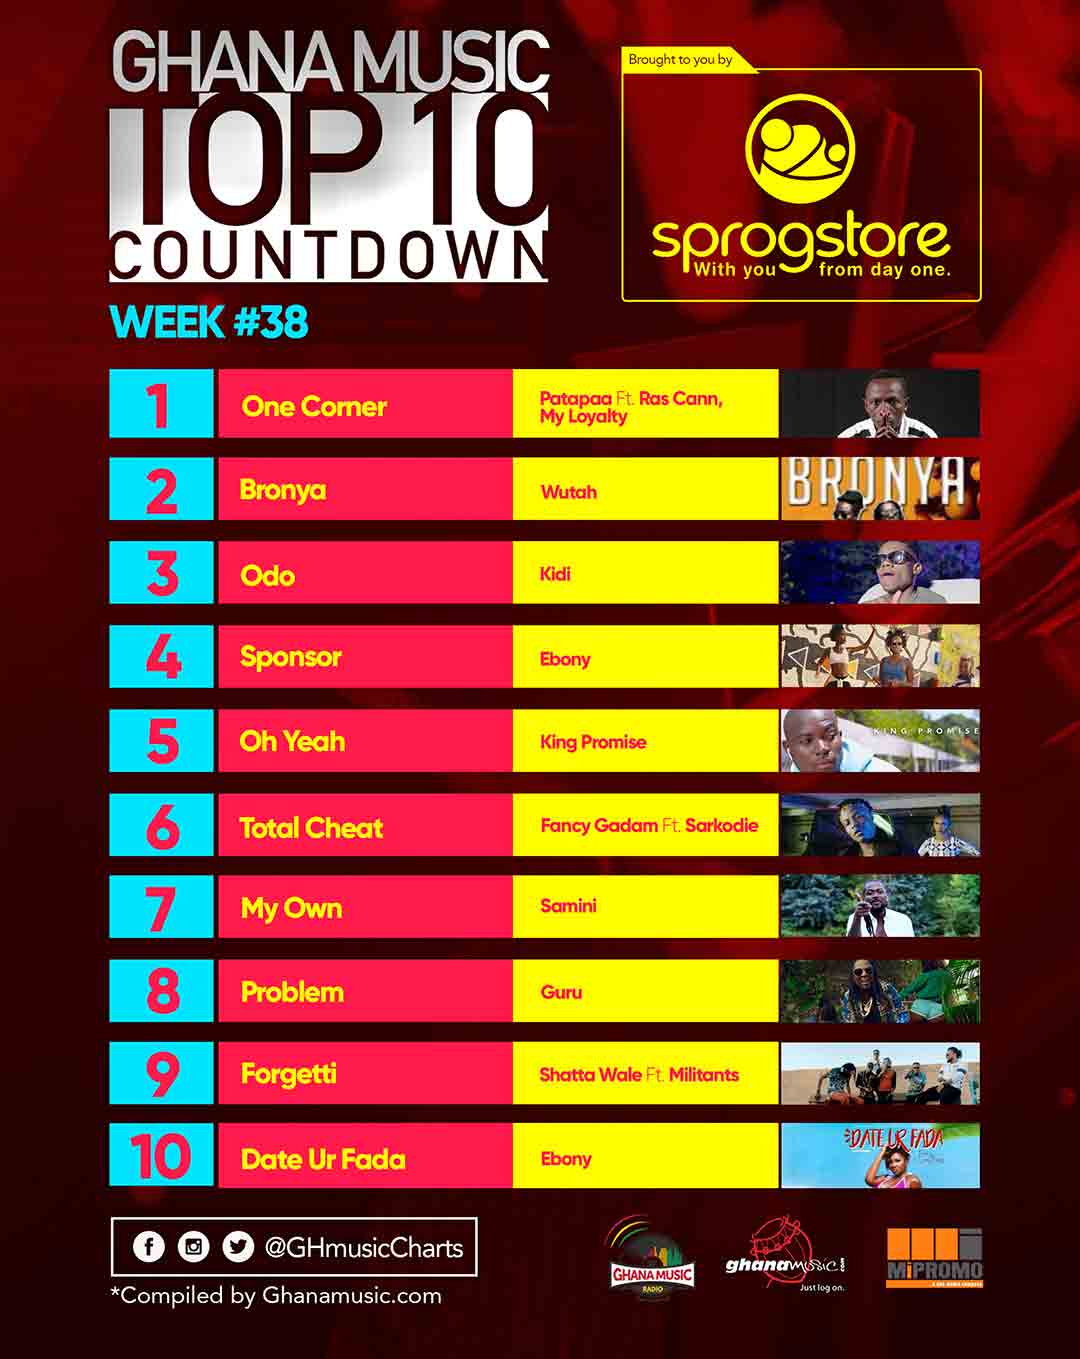 Week #38: Week ending Saturday, September 23rd, 2017. Ghana Music Top 10 Countdown.